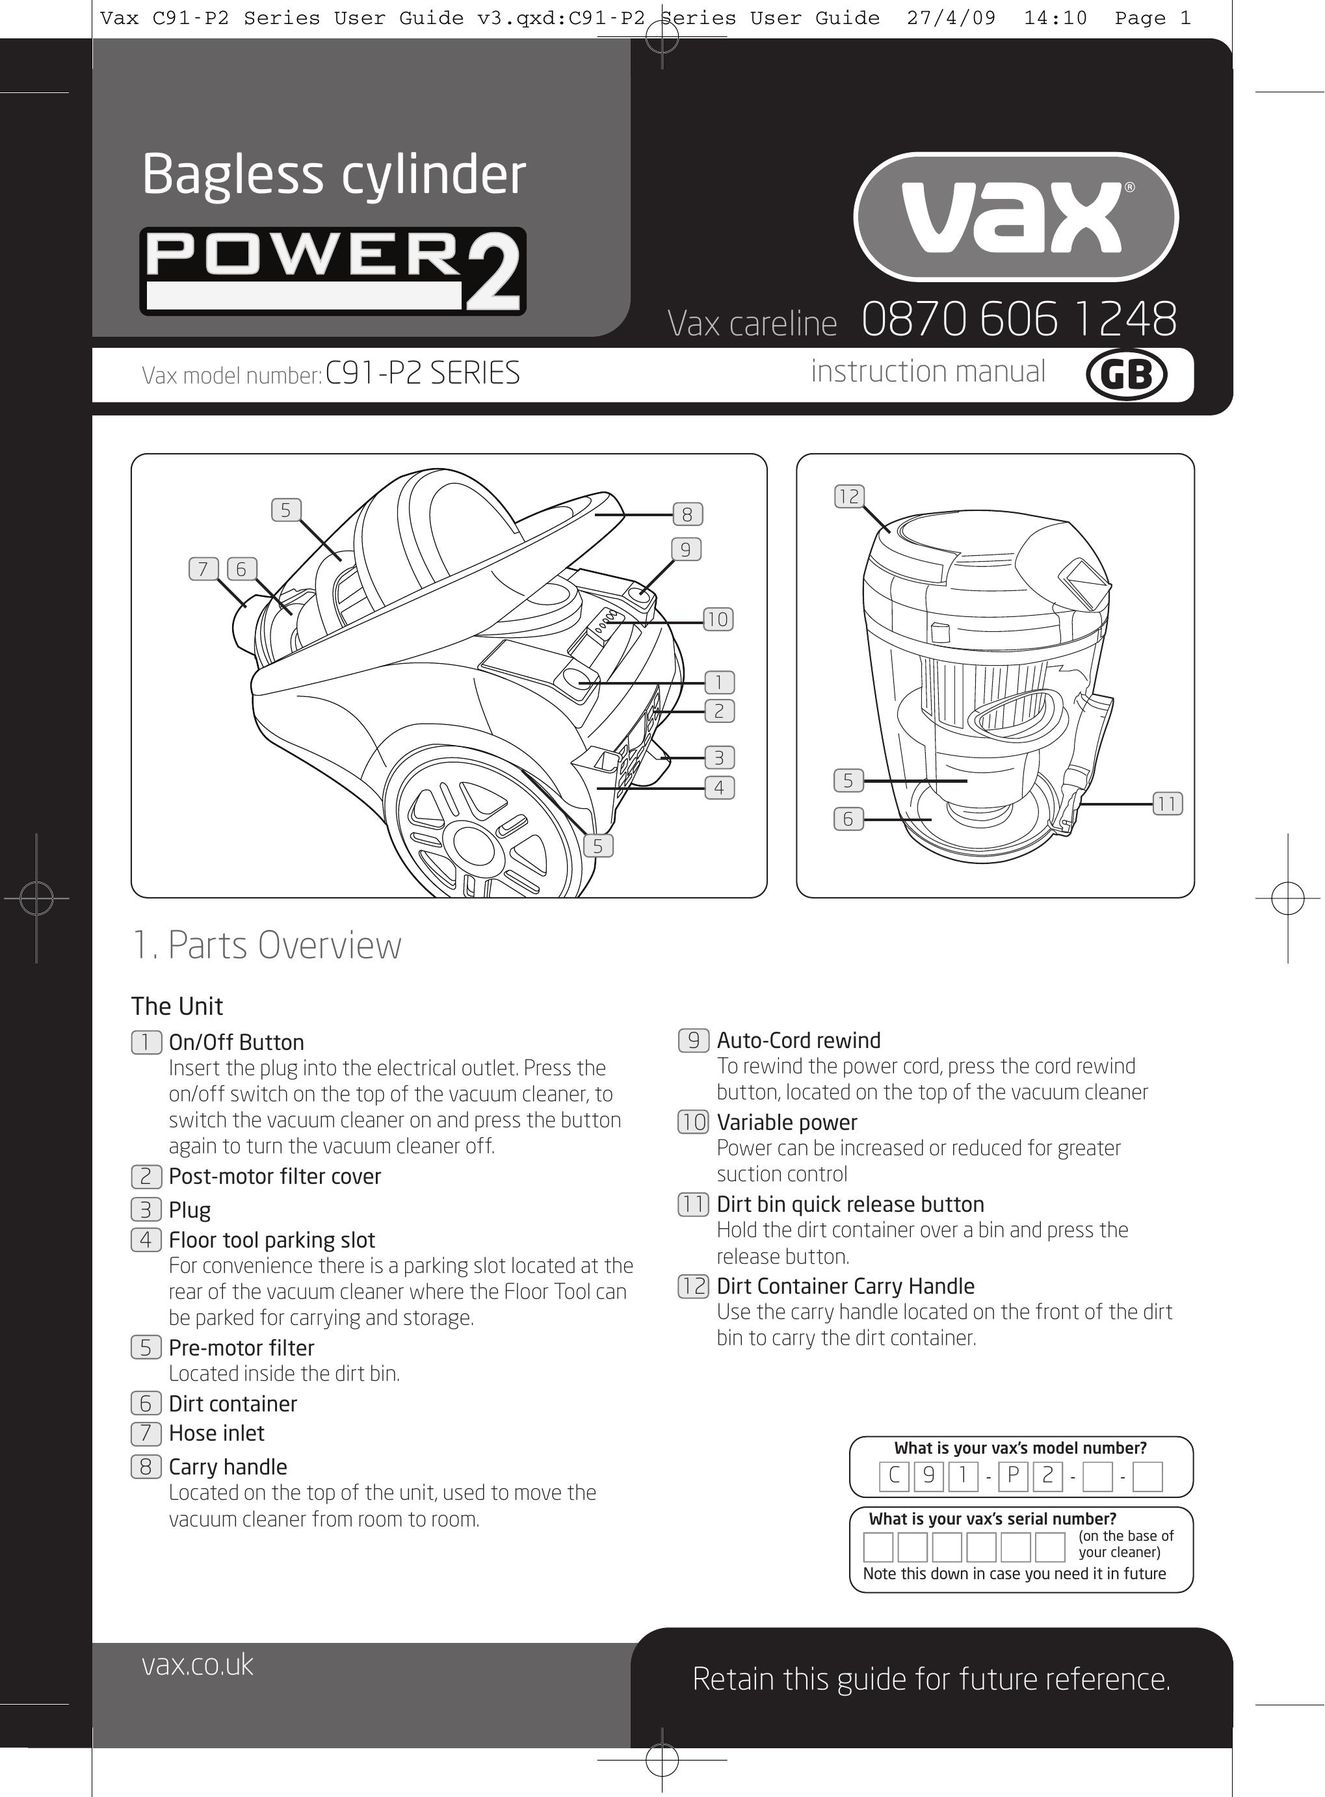 Vax C91-P2 Vacuum Cleaner User Manual